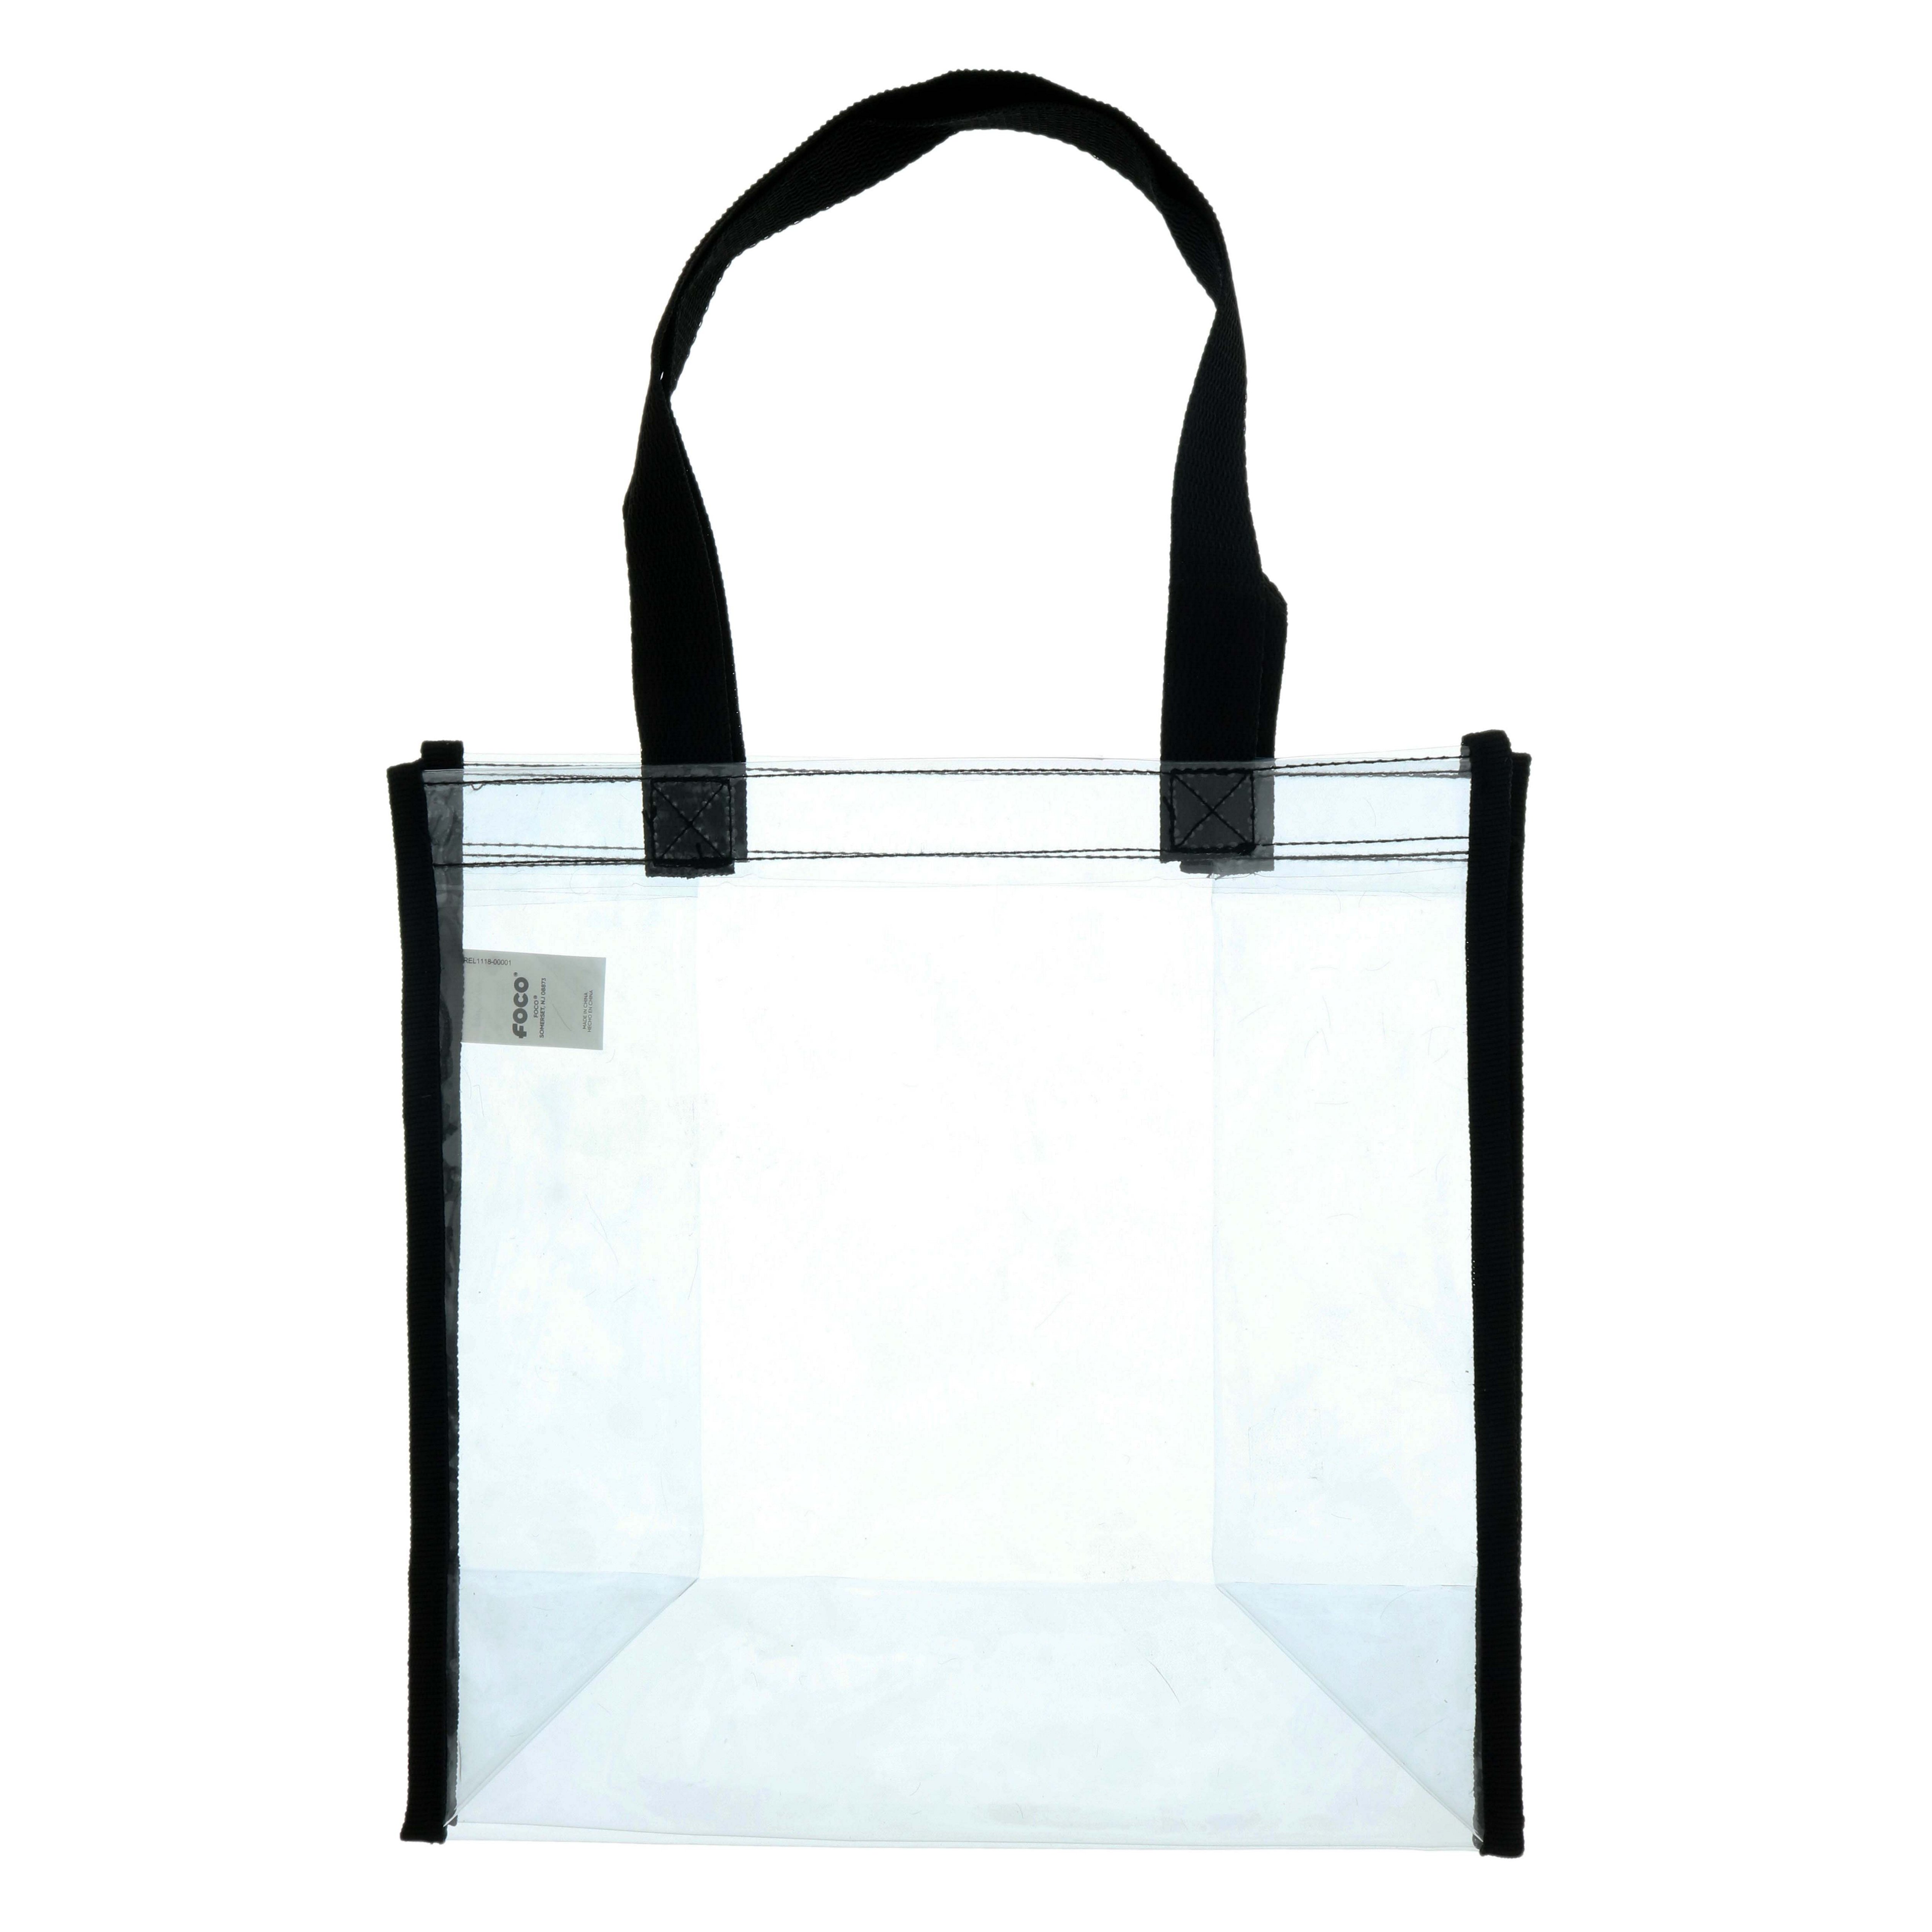 Unique Clear Cello Bags - Shop at H-E-B